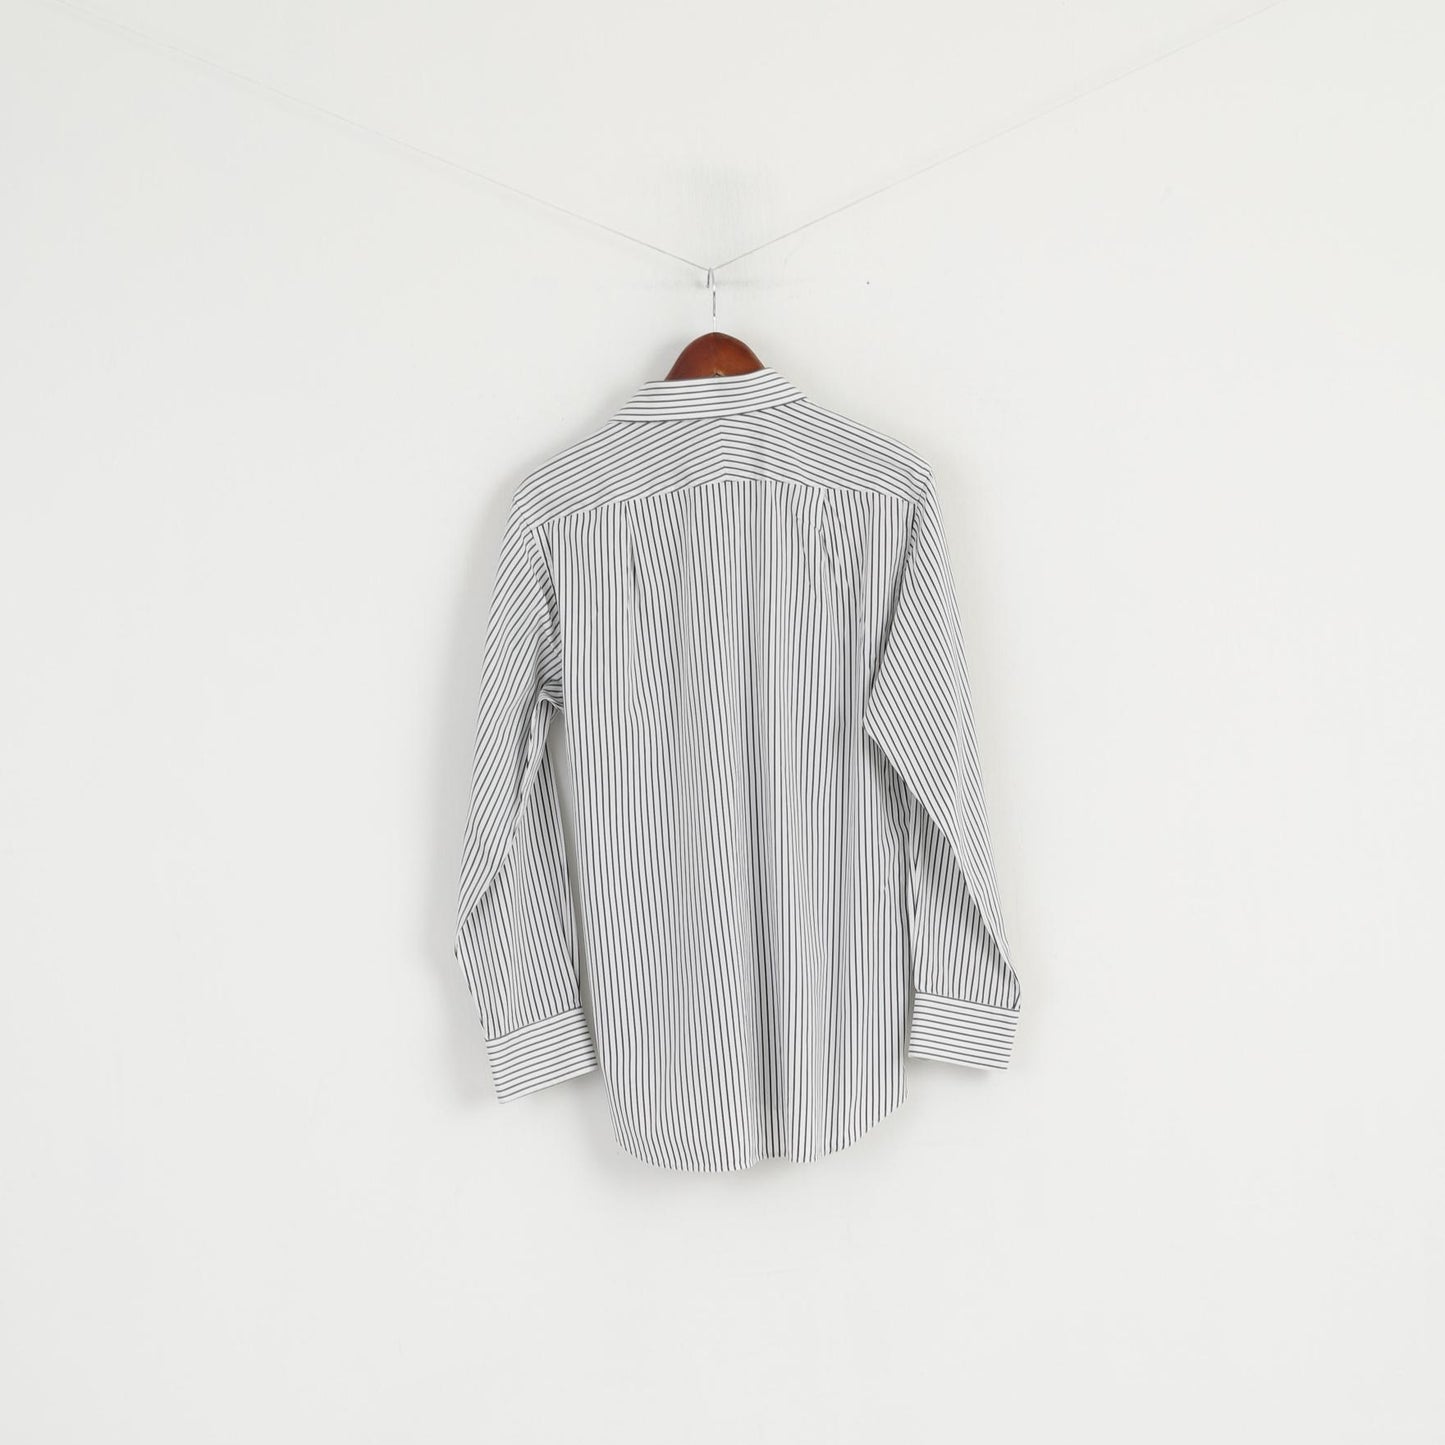 Charles Tyrwhitt hommes 16 41 M chemise décontractée blanc noir rayé coton coupe ajustée haut à manches longues